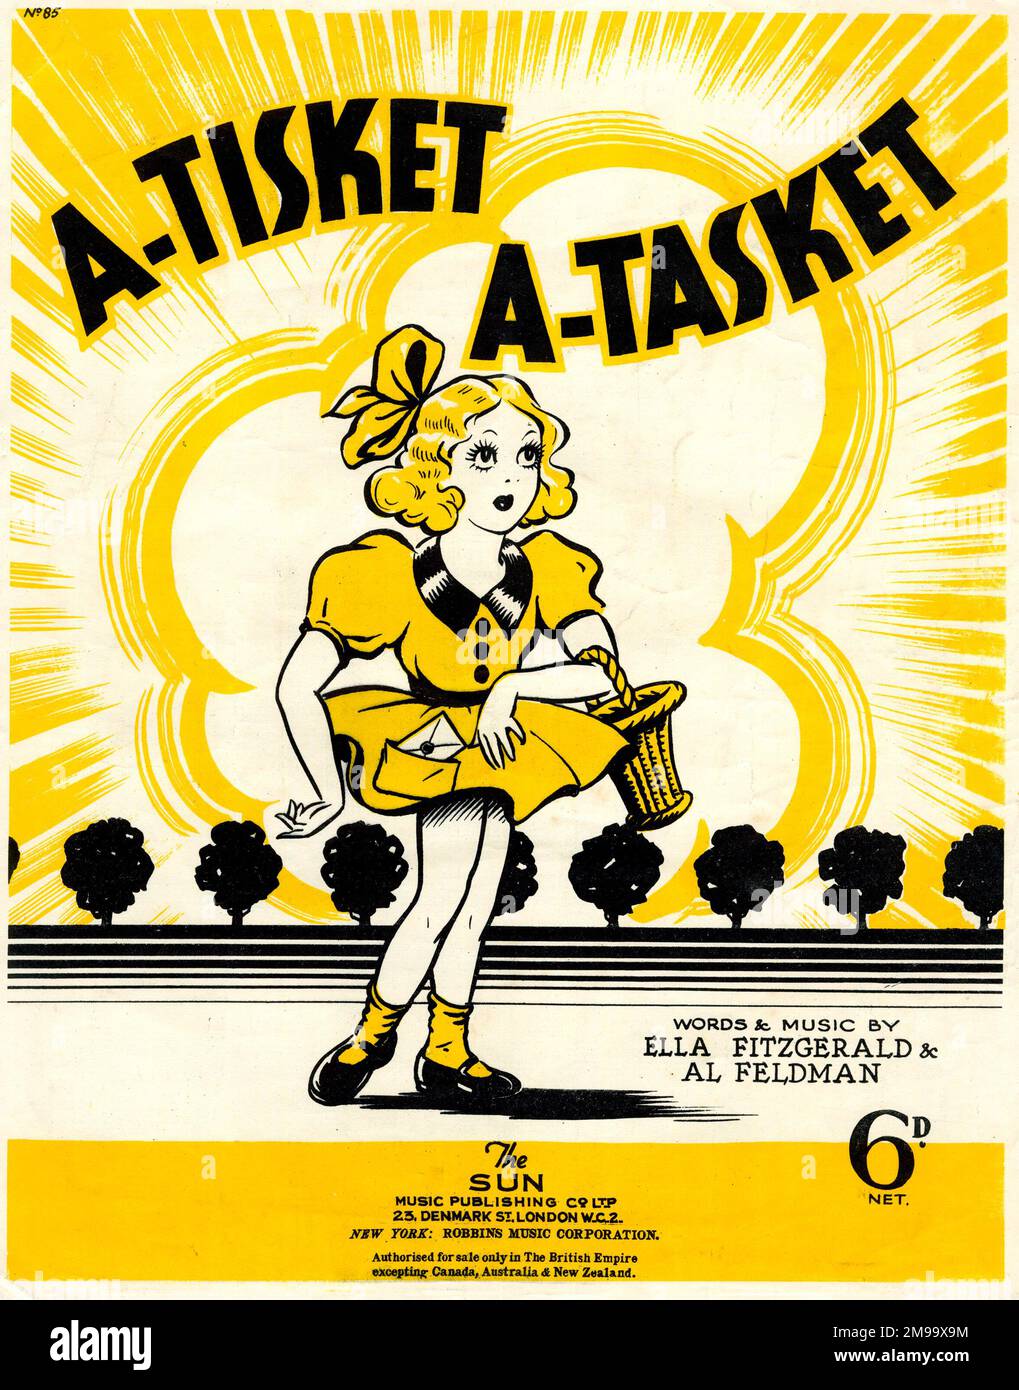 Titelseite, A-Tisket A-Tasket, Wörter und Musik von Ella Fitzgerald und Al Feldman. Stockfoto